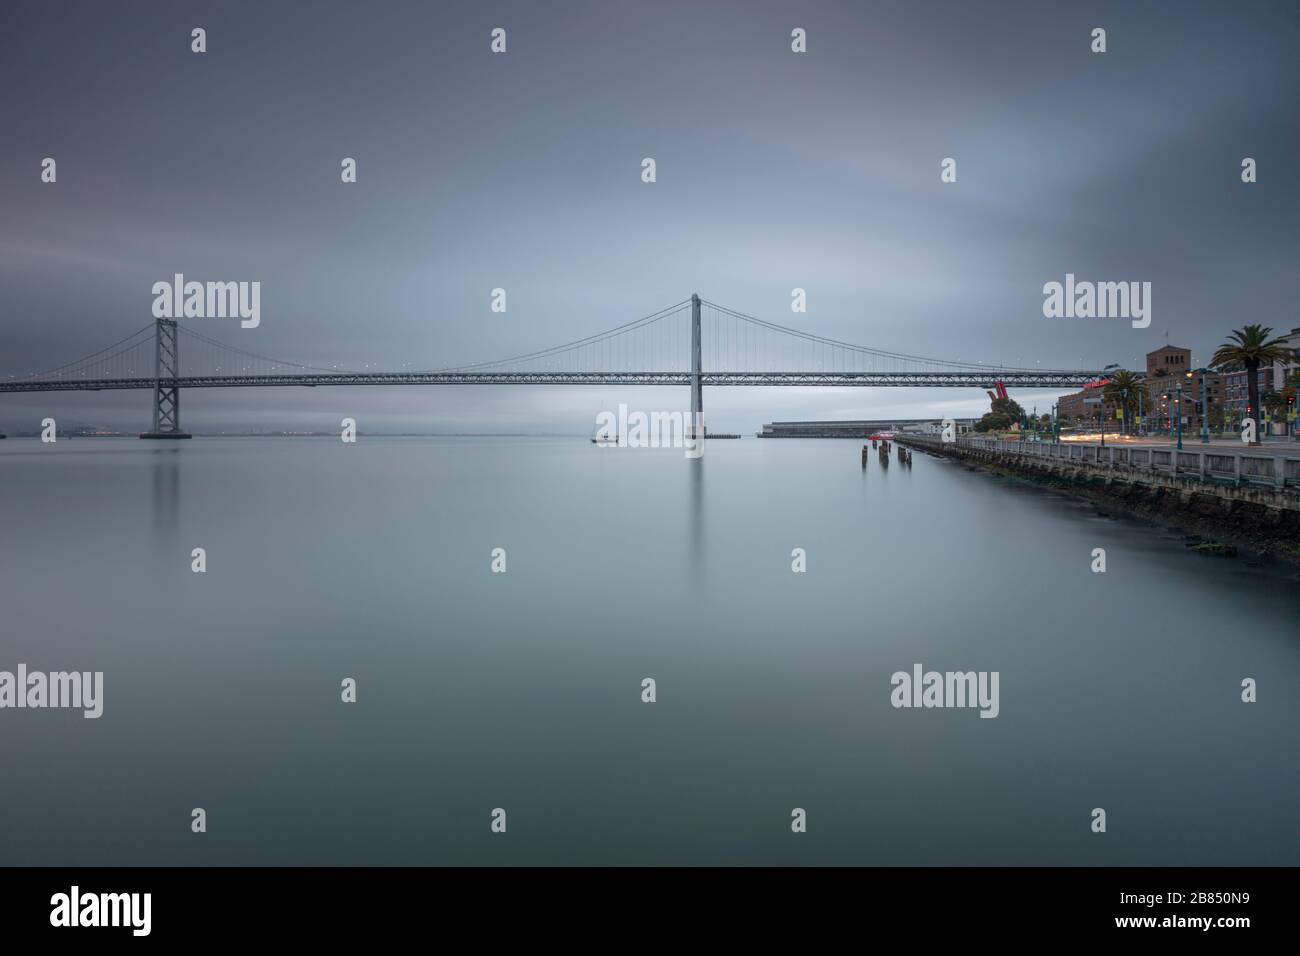 Oakland Bay Bridge as seen from Pier 14 San Francisco Stock Photo